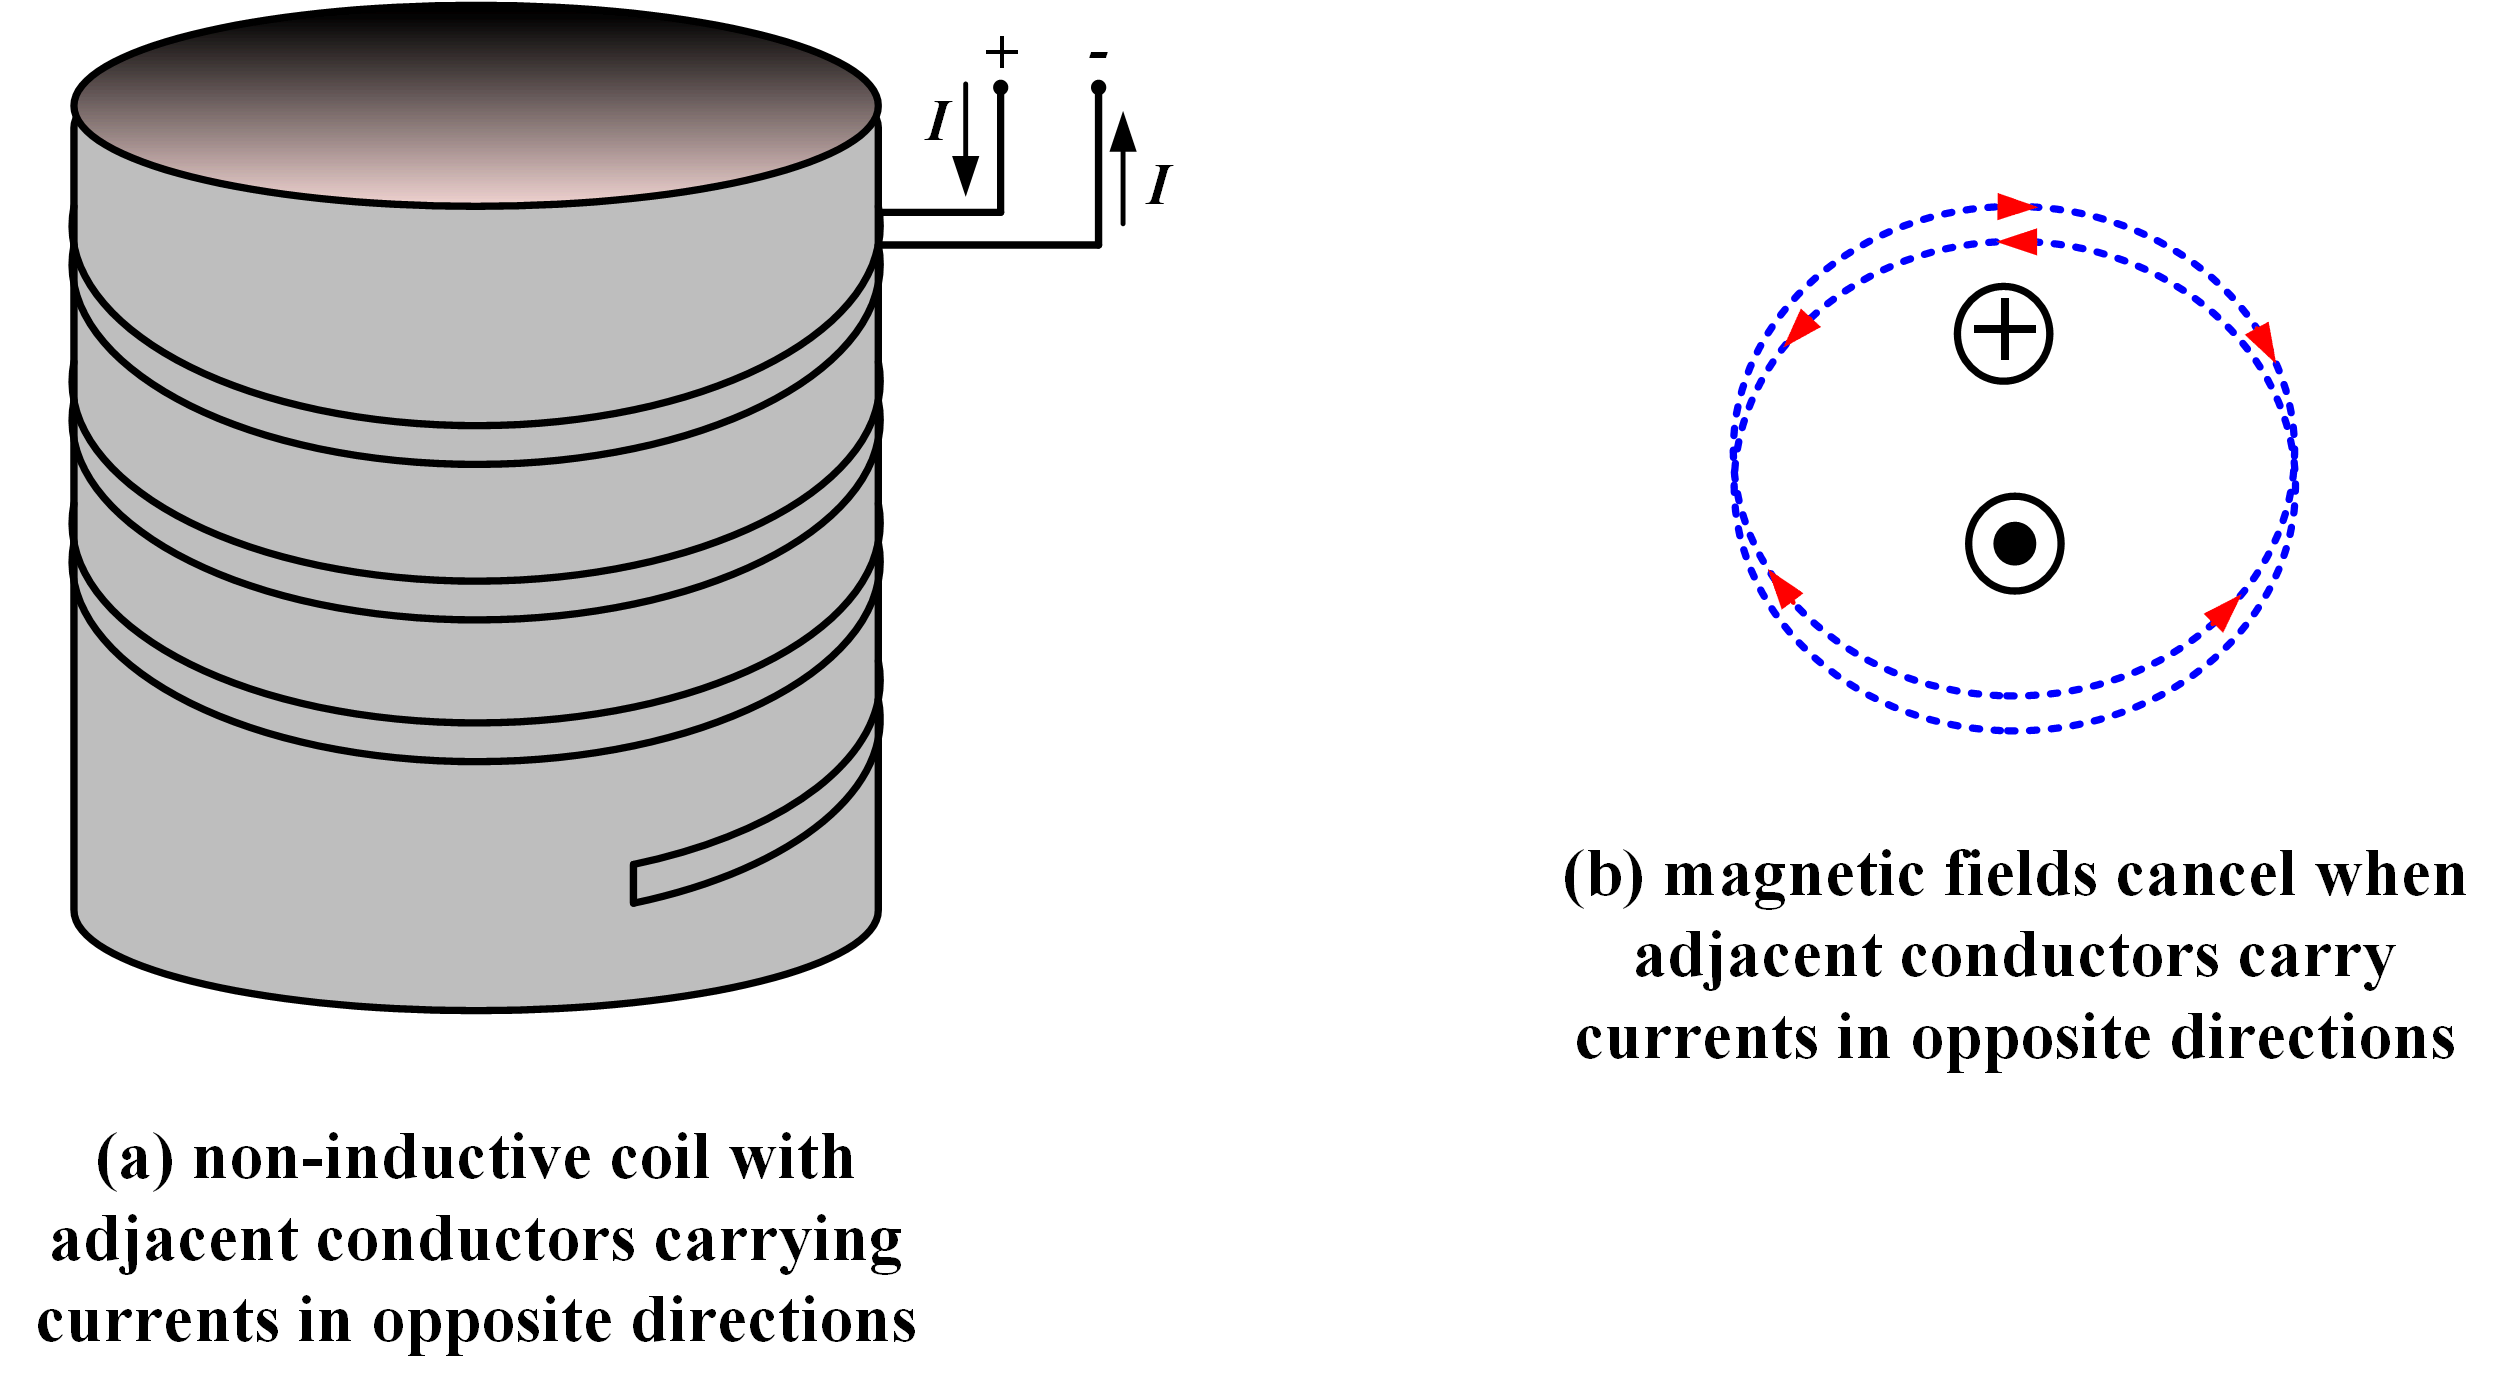 figura 6 bobina no inductiva